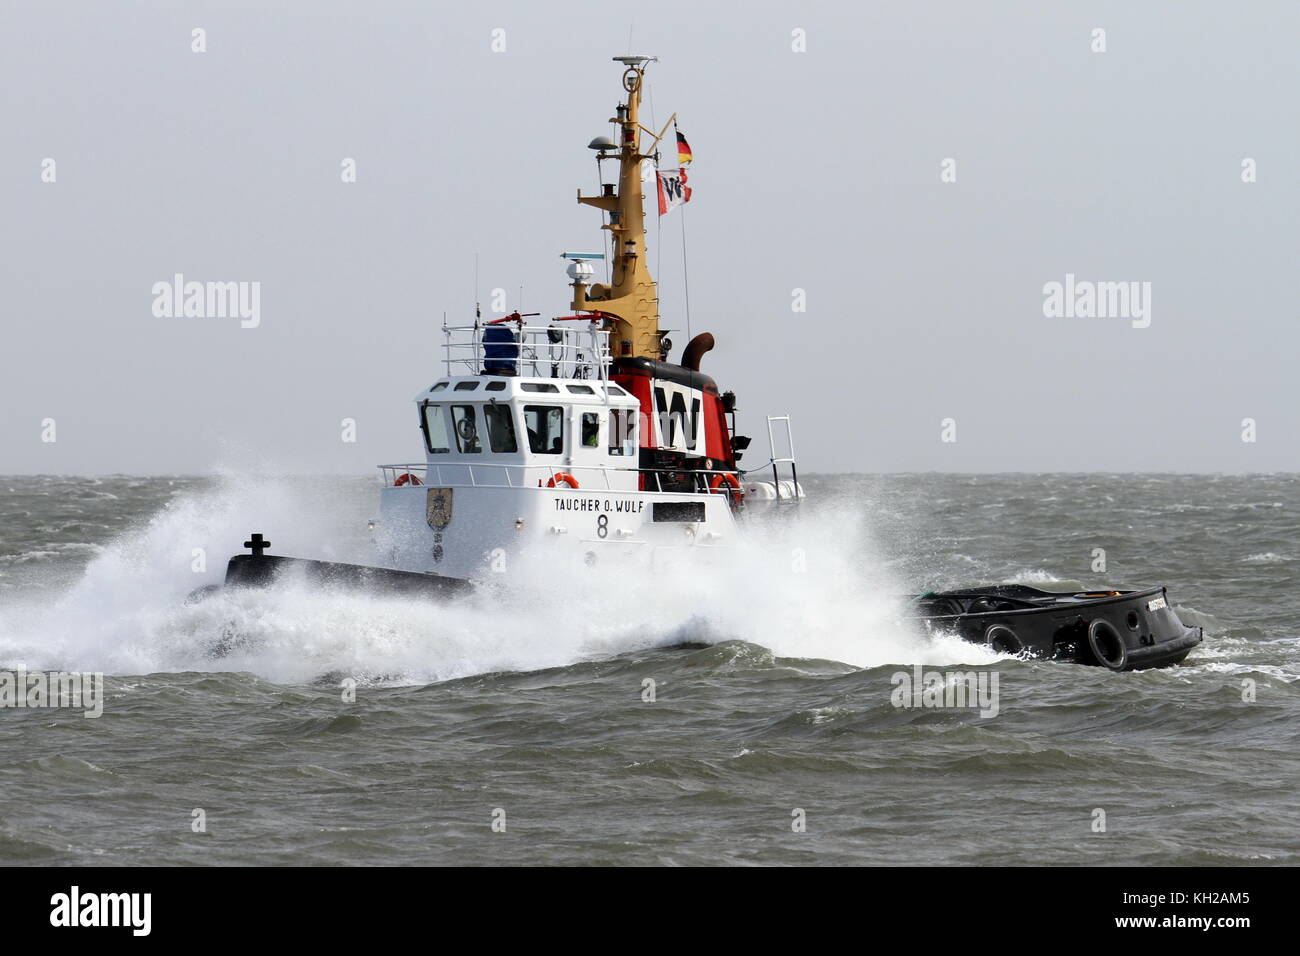 Il Harbour tug subacquei o Wulf 8 lascia il porto di Cuxhaven sul mare tempestoso il 30 marzo 2015. Foto Stock